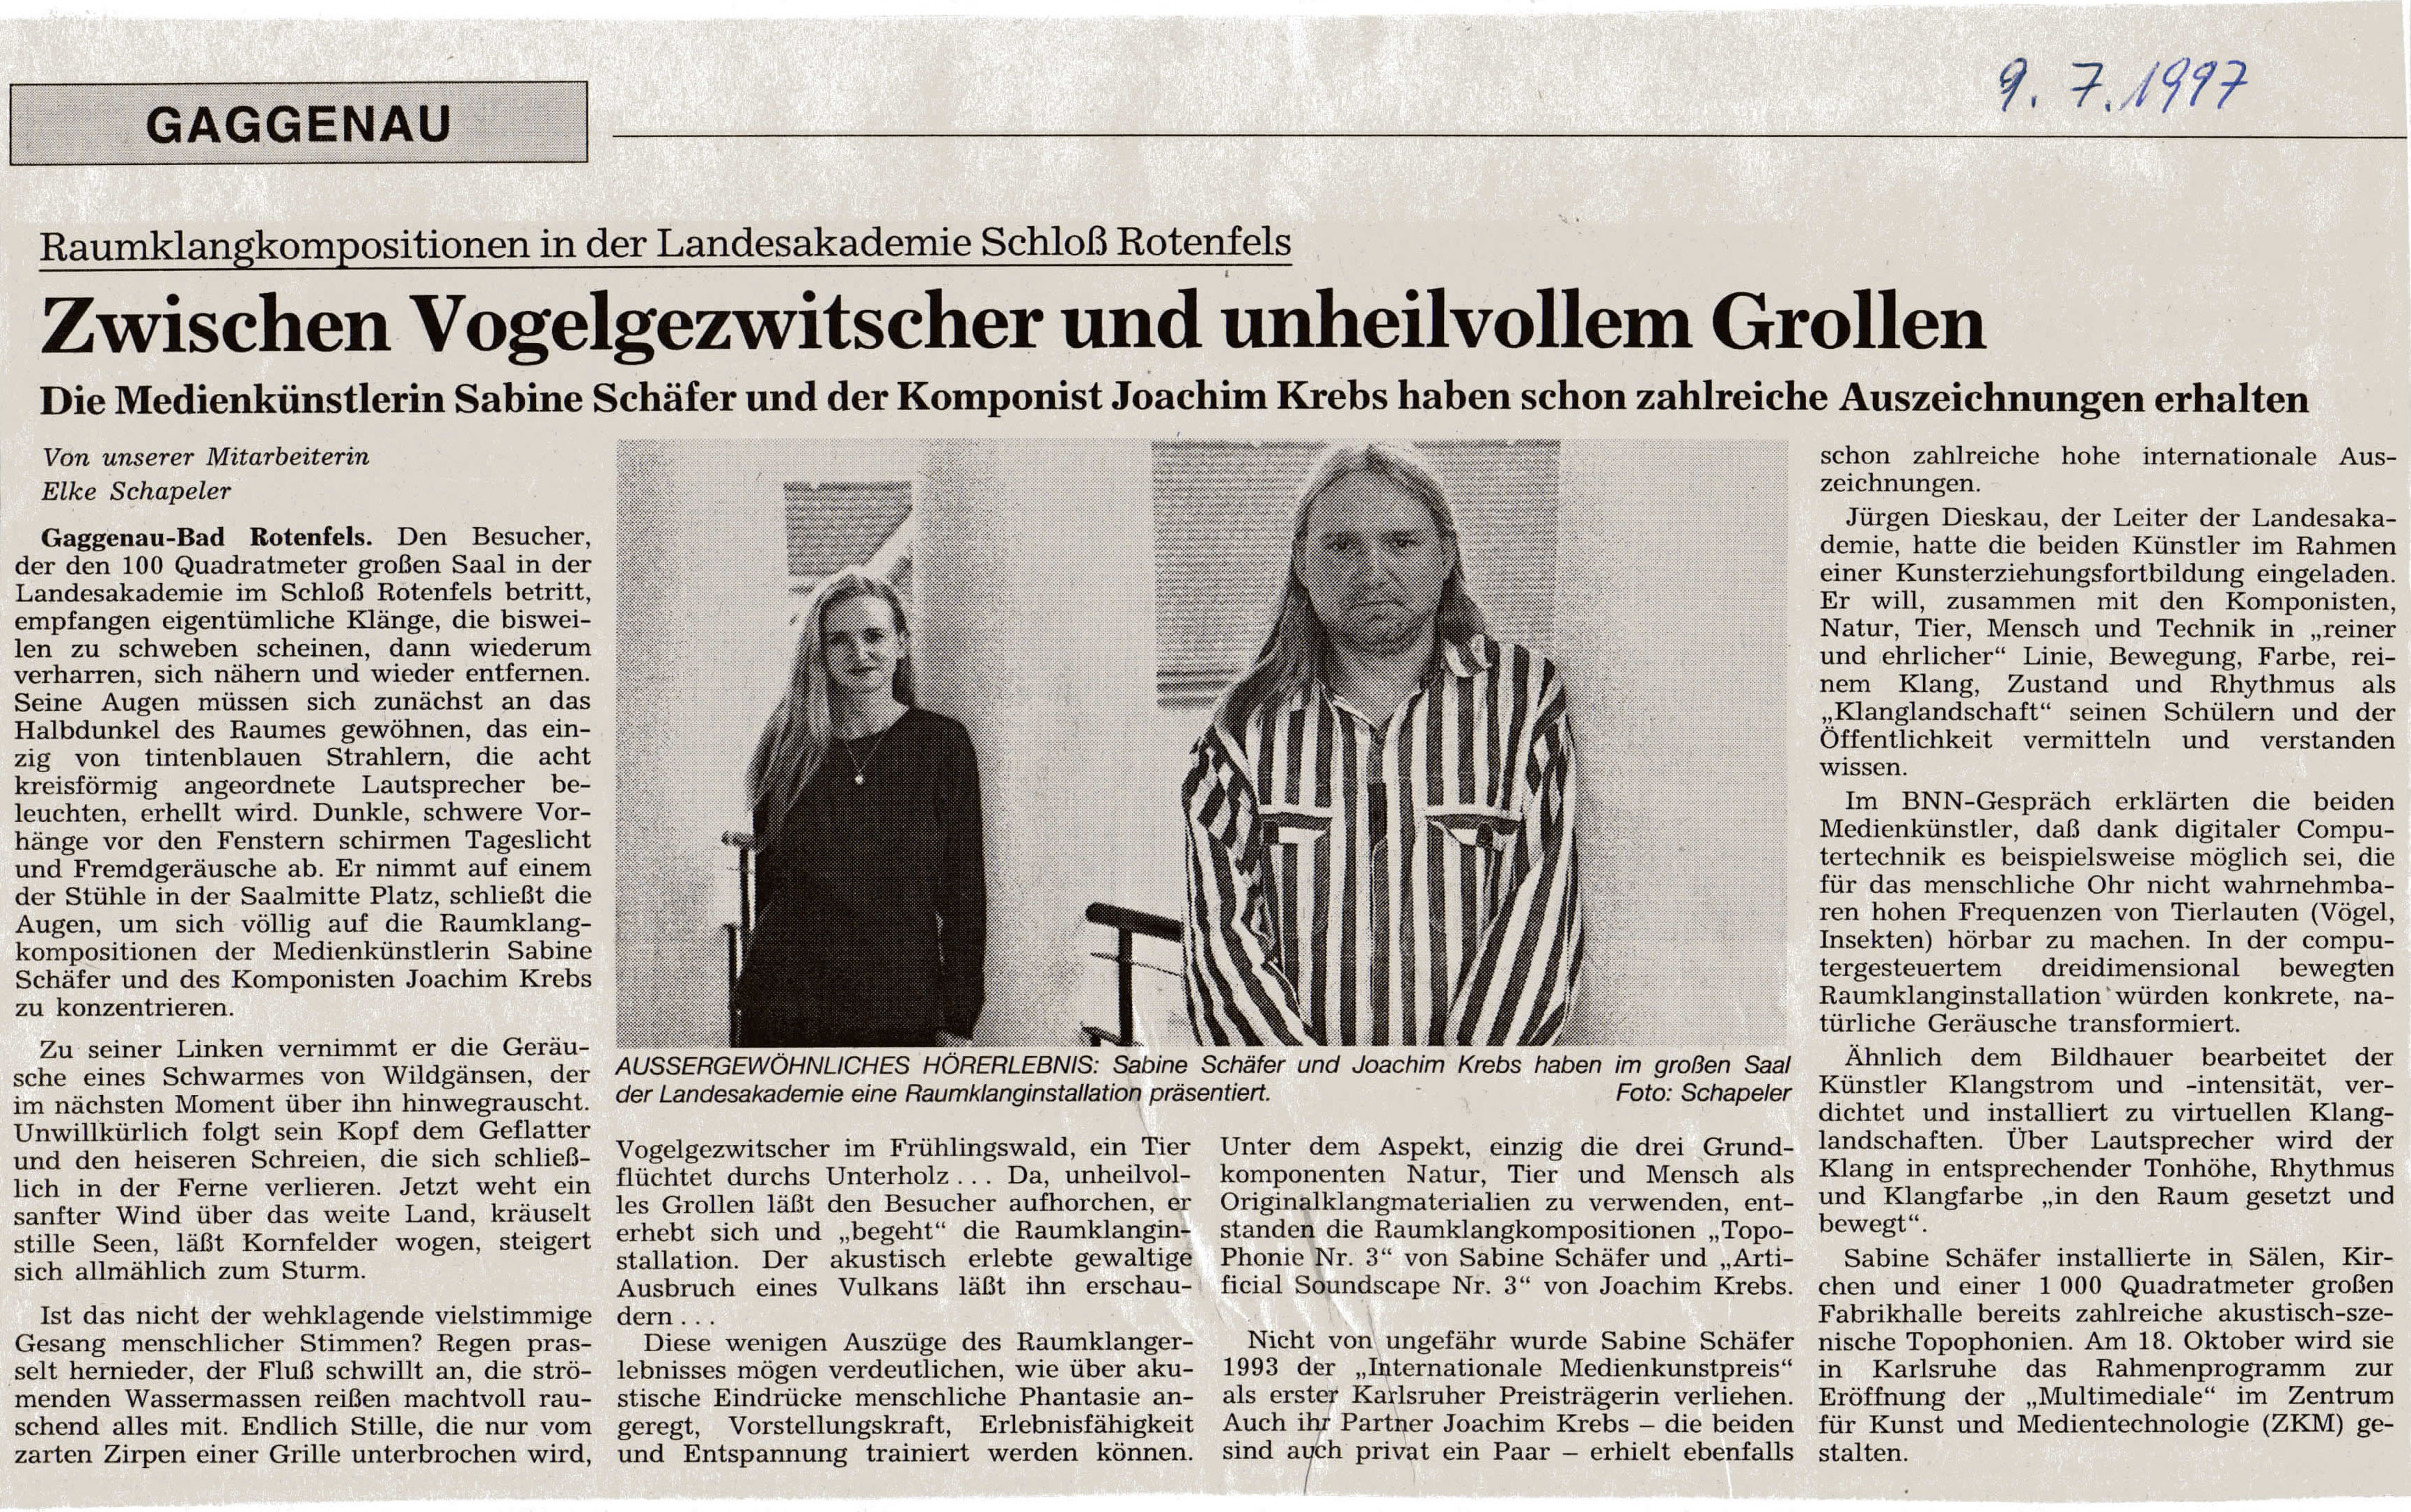 Rezension Badische Neueste Nachrichten (BNN), vom 8.7.1997 mit Porträts von Schäfer und Krebs